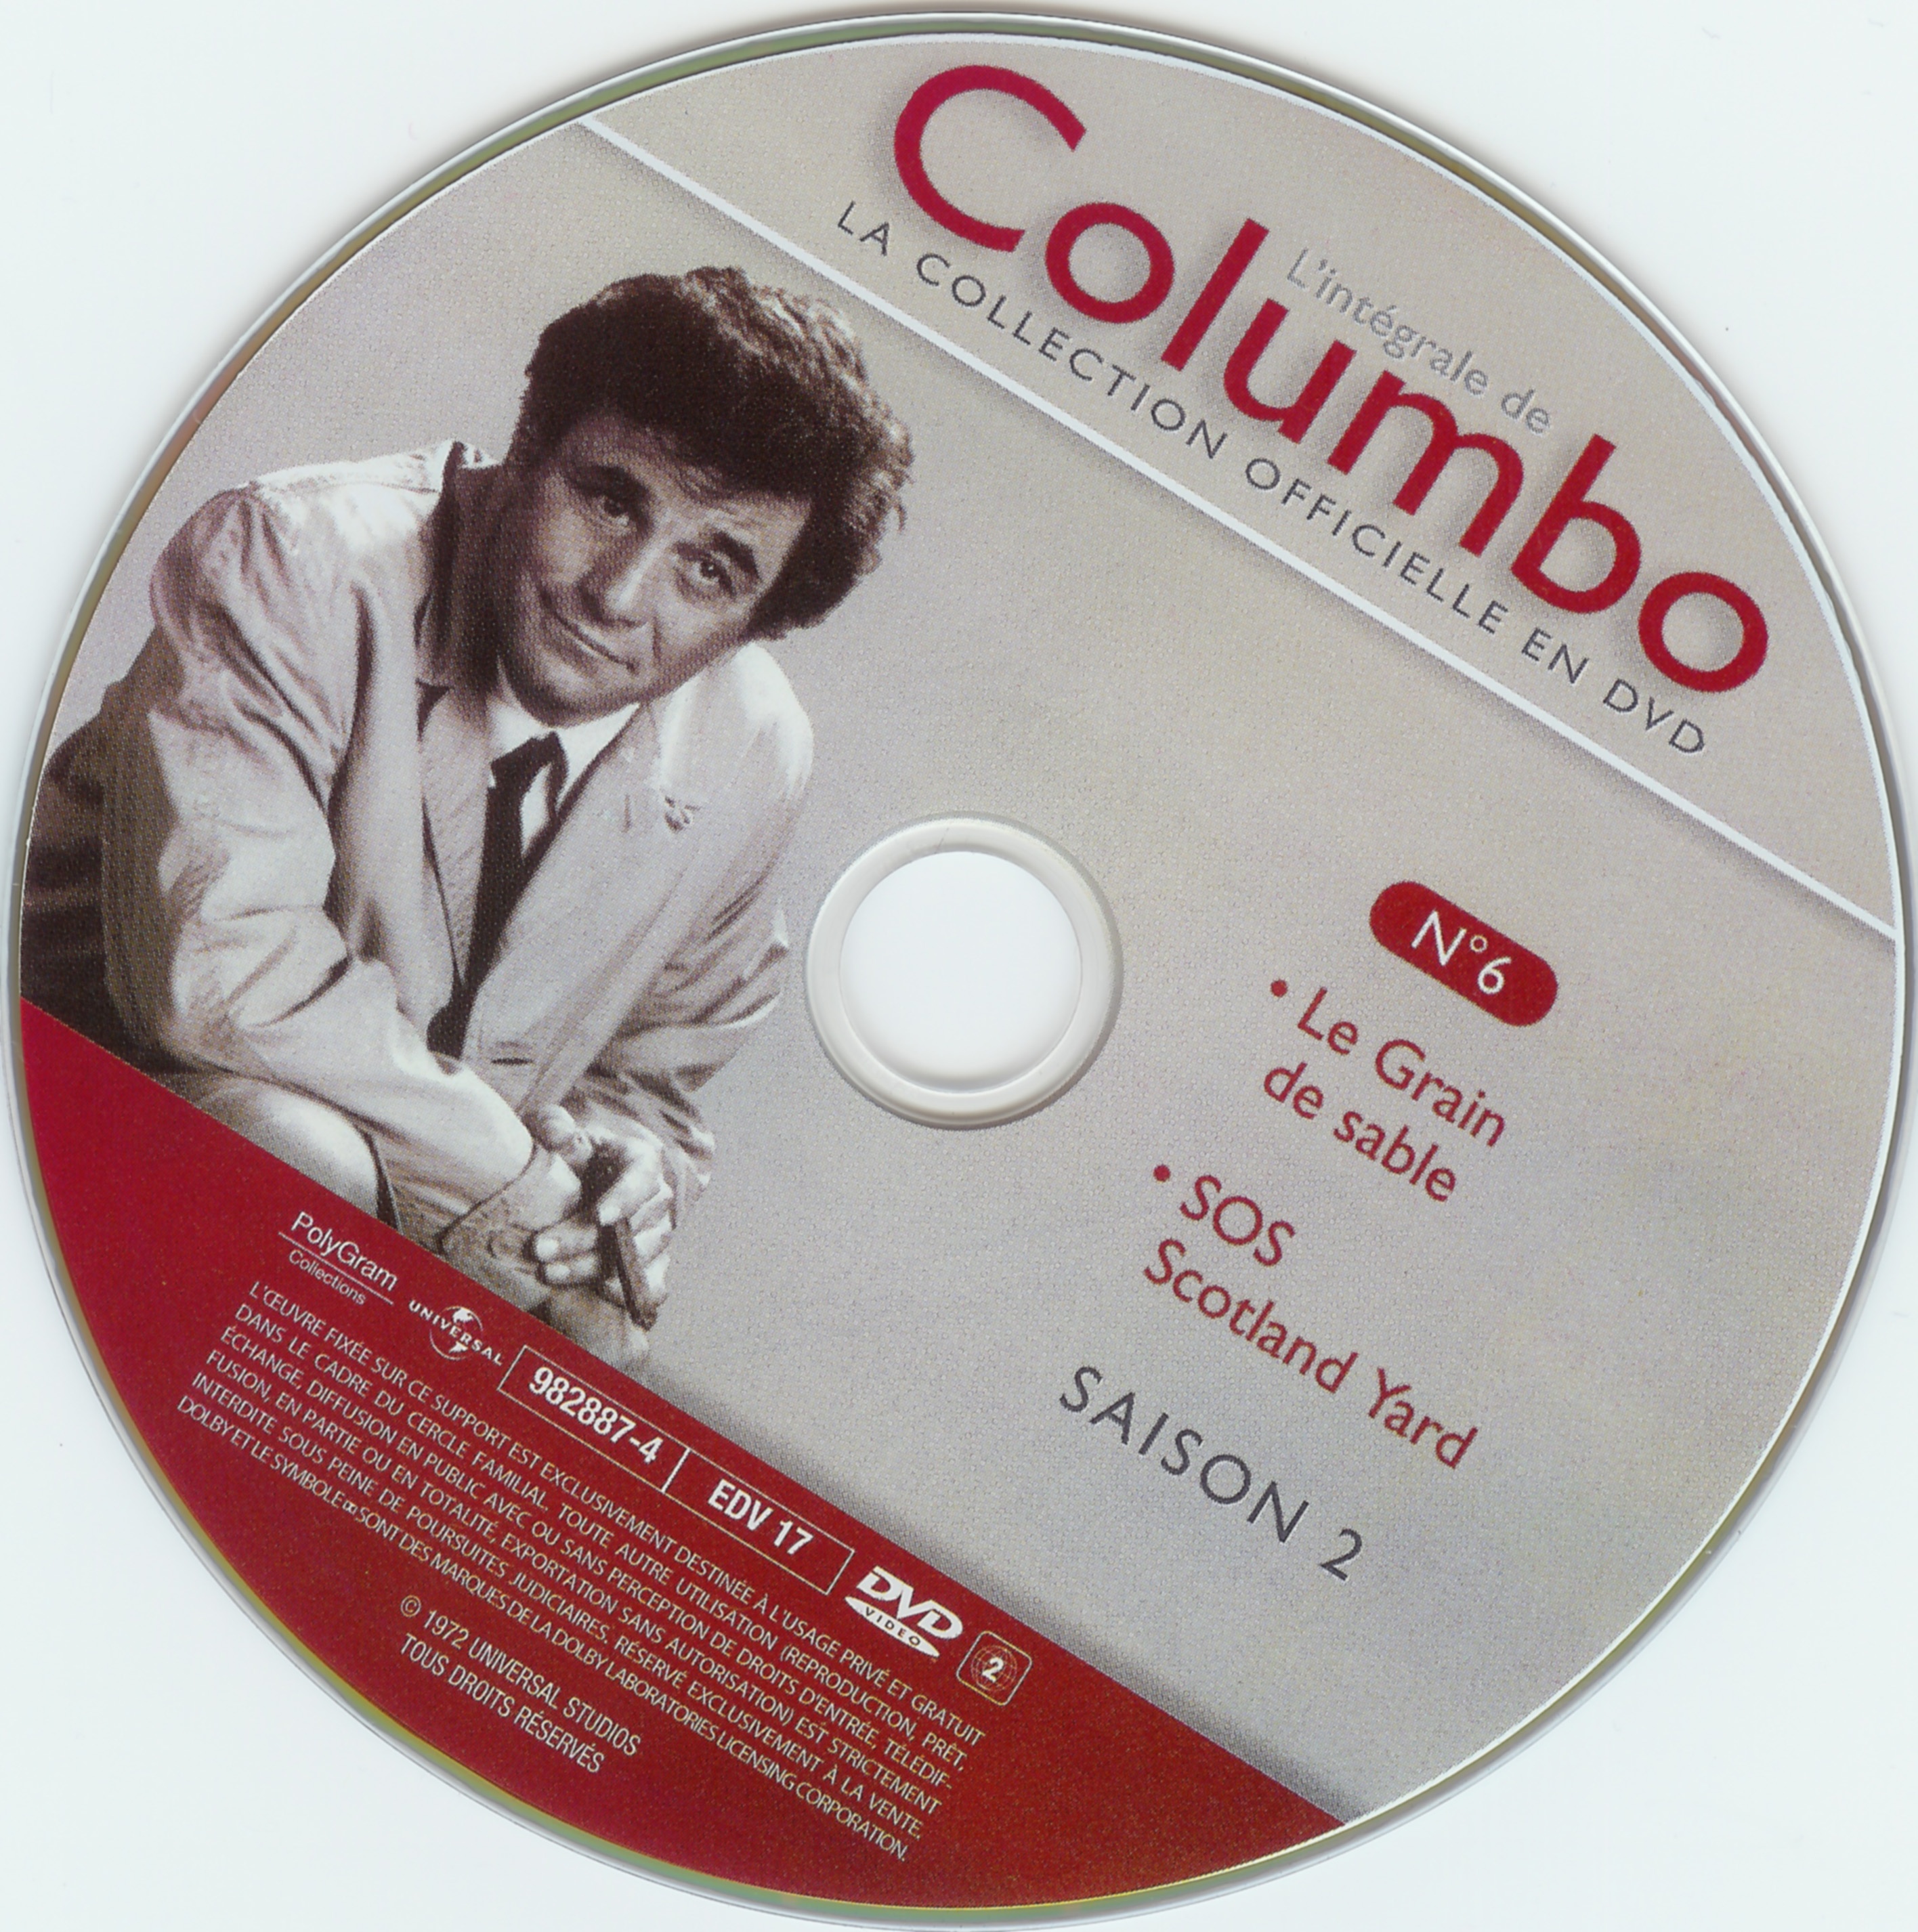 Columbo saison 2 vol 06